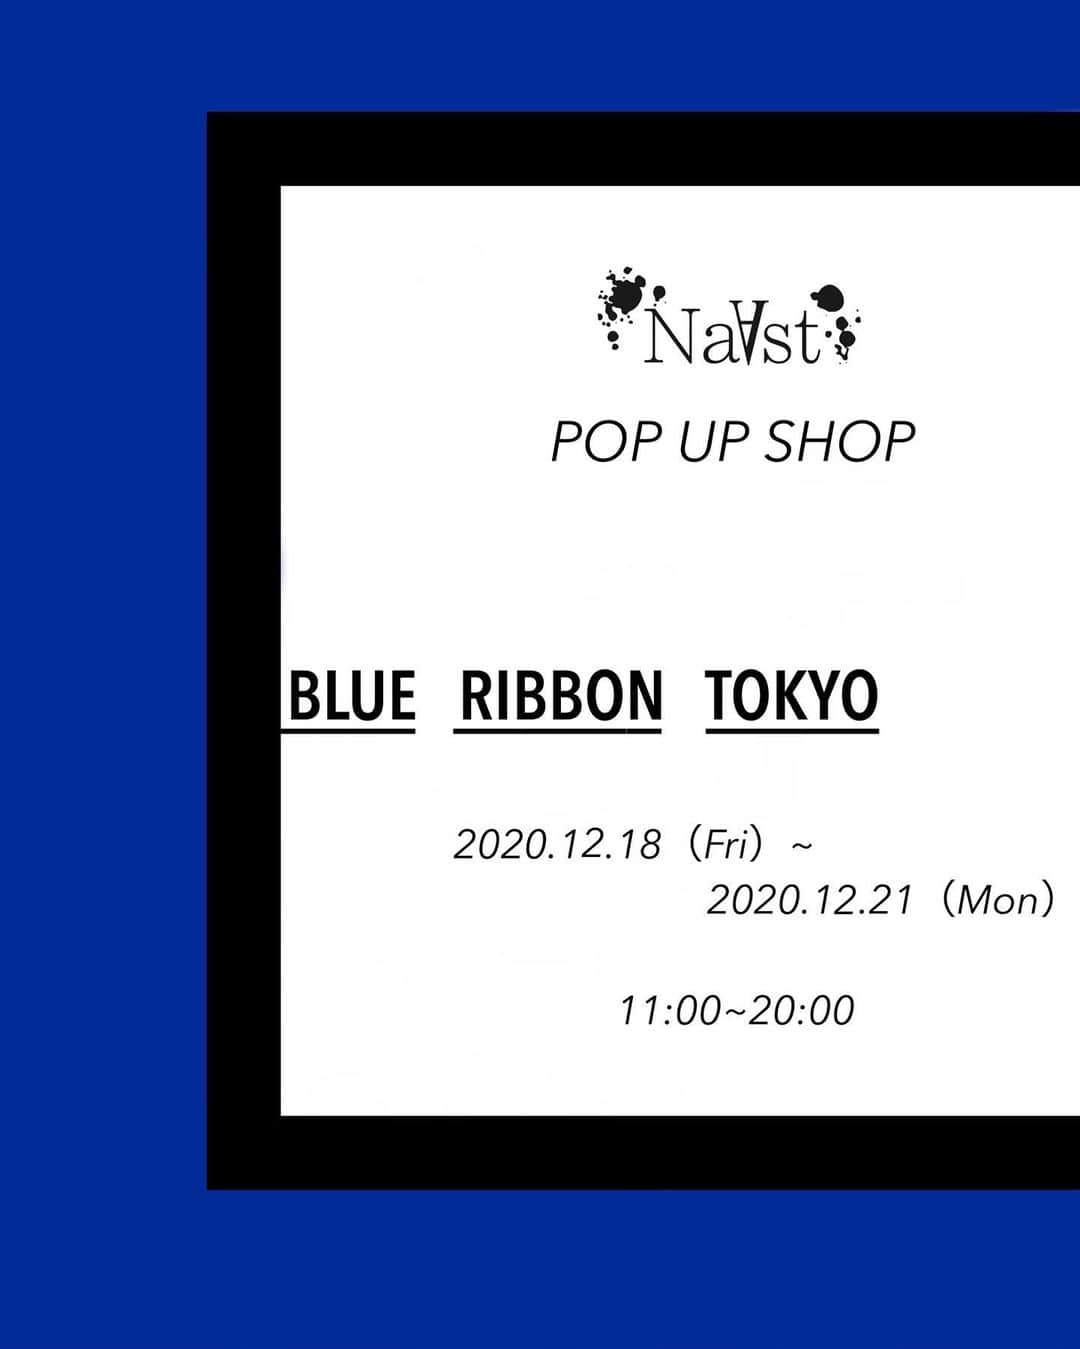 高田志織のインスタグラム：「☆告知☆ NaAst POP UP SHOP@BLUE RIBBON TOKYOにて開催します…！  今年最後のPOP UP SHOPです◎ 今回は、４日間です…！  カフェ（@blue_ribbon_tokyo）での開催は、初めてなので新しい雰囲気になりそうで、わくわくしています。 2階もあるゆったりしたカフェなので、お時間あります方は、Drink/Lunchも一緒に是非楽しんで下さいね◎ ※Take Outもok!  出来る限りの感染拡大防止対策をして、 皆様にお会い出来るのを楽しみにしています。  NaAst POP UP SHOP ⚫︎期間:2020.12.18（Fri）~2020.12.21(Mon) ⚫︎時間:11:00~20:00 ⚫︎場所:BLUE RIBBON TOKYO 東京都世田谷区池尻4-37-8  #NaAst#ハンドメイド#handmade#アクセサリー#accessory#tokyo#東京#blueribbontokyo#cafe」